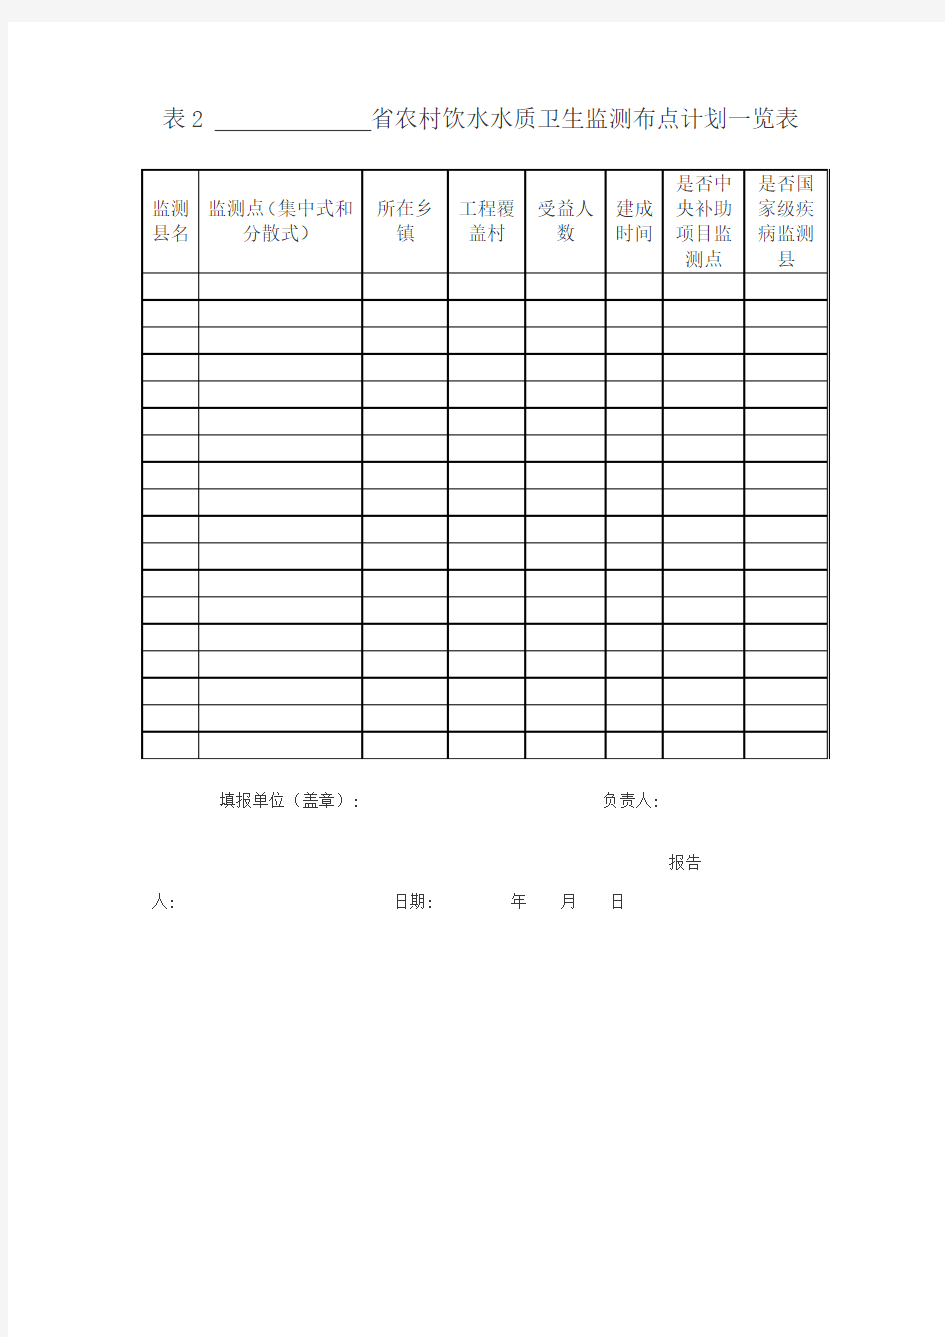 表1 省涉农县(区)基本情况一览表 - 仪器信息网